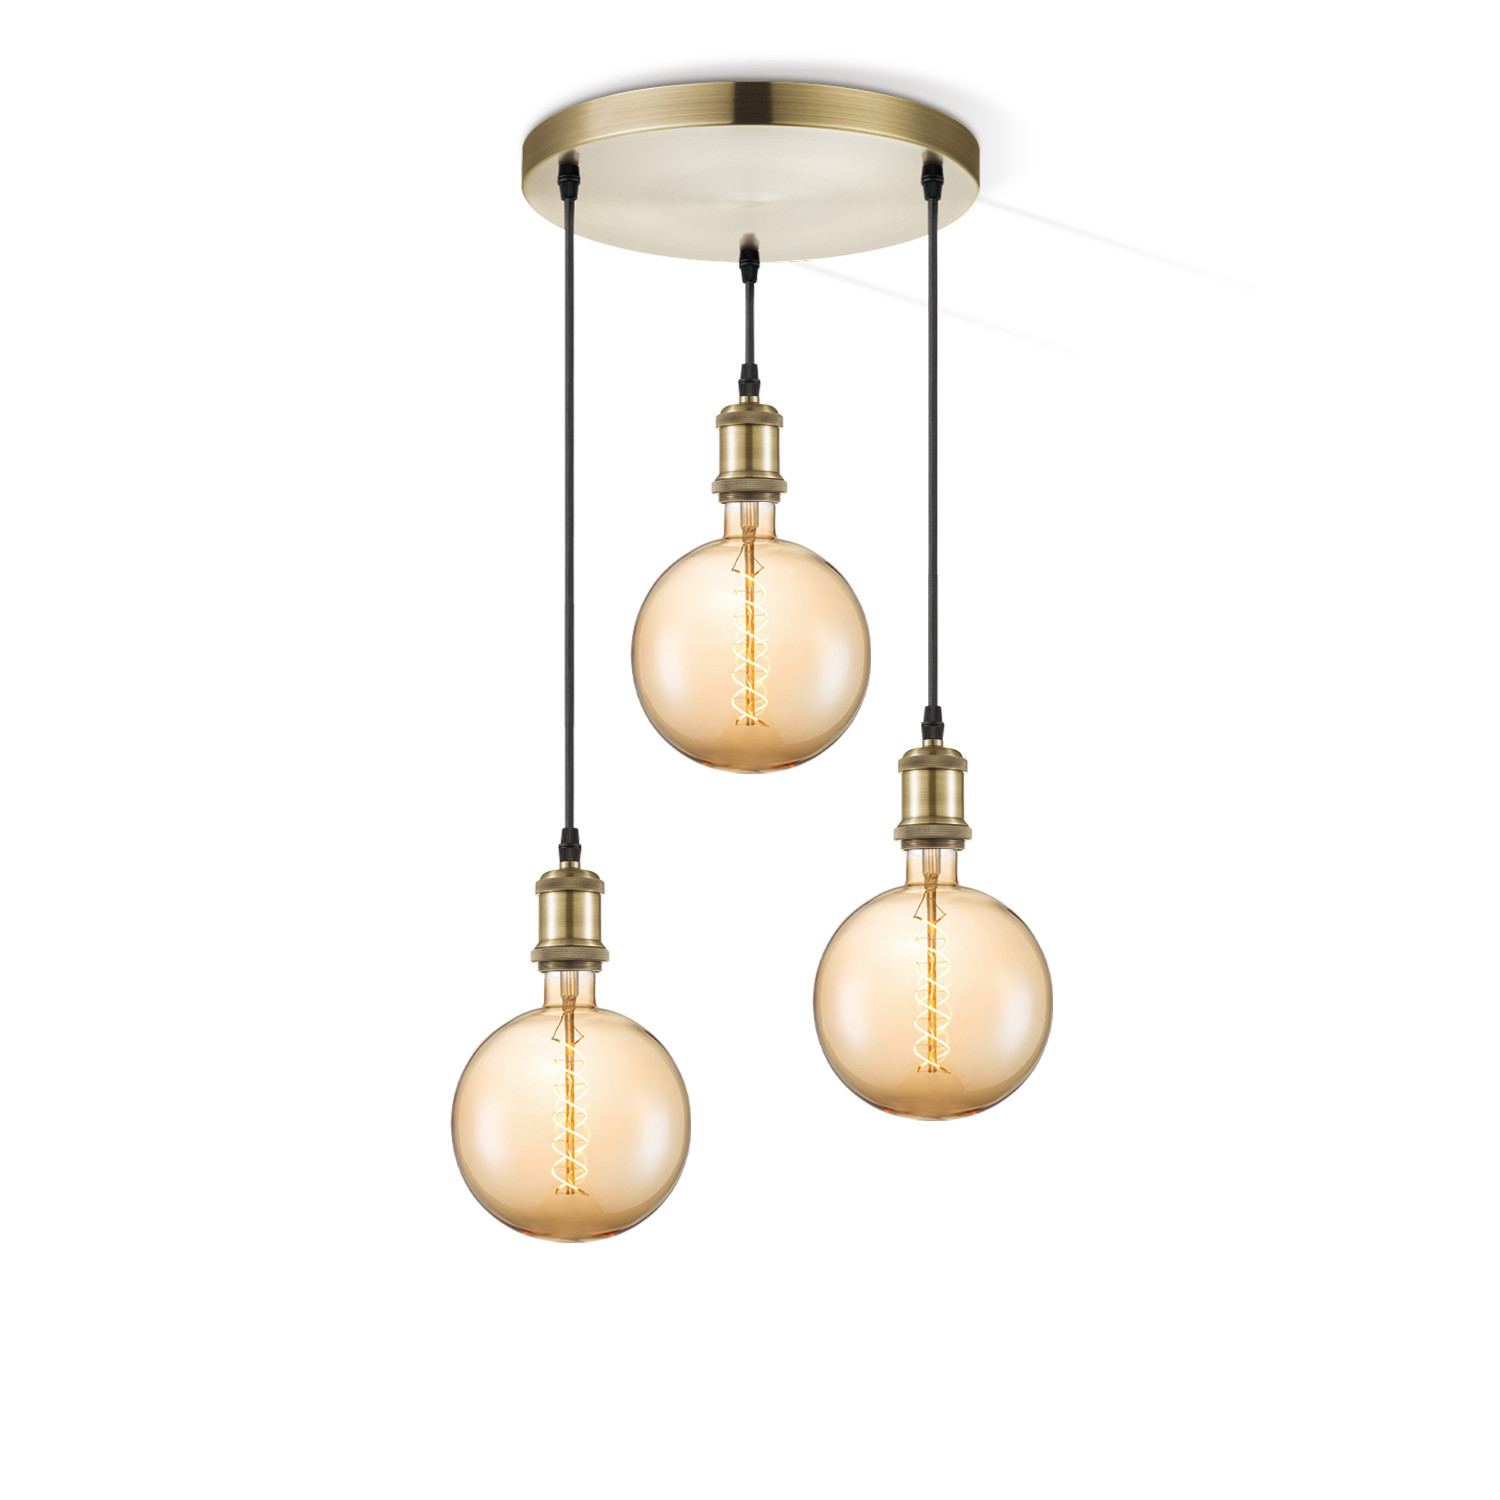 Light depot - hanglamp Vintage brons 3L Spiral g180 - amber - Outlet